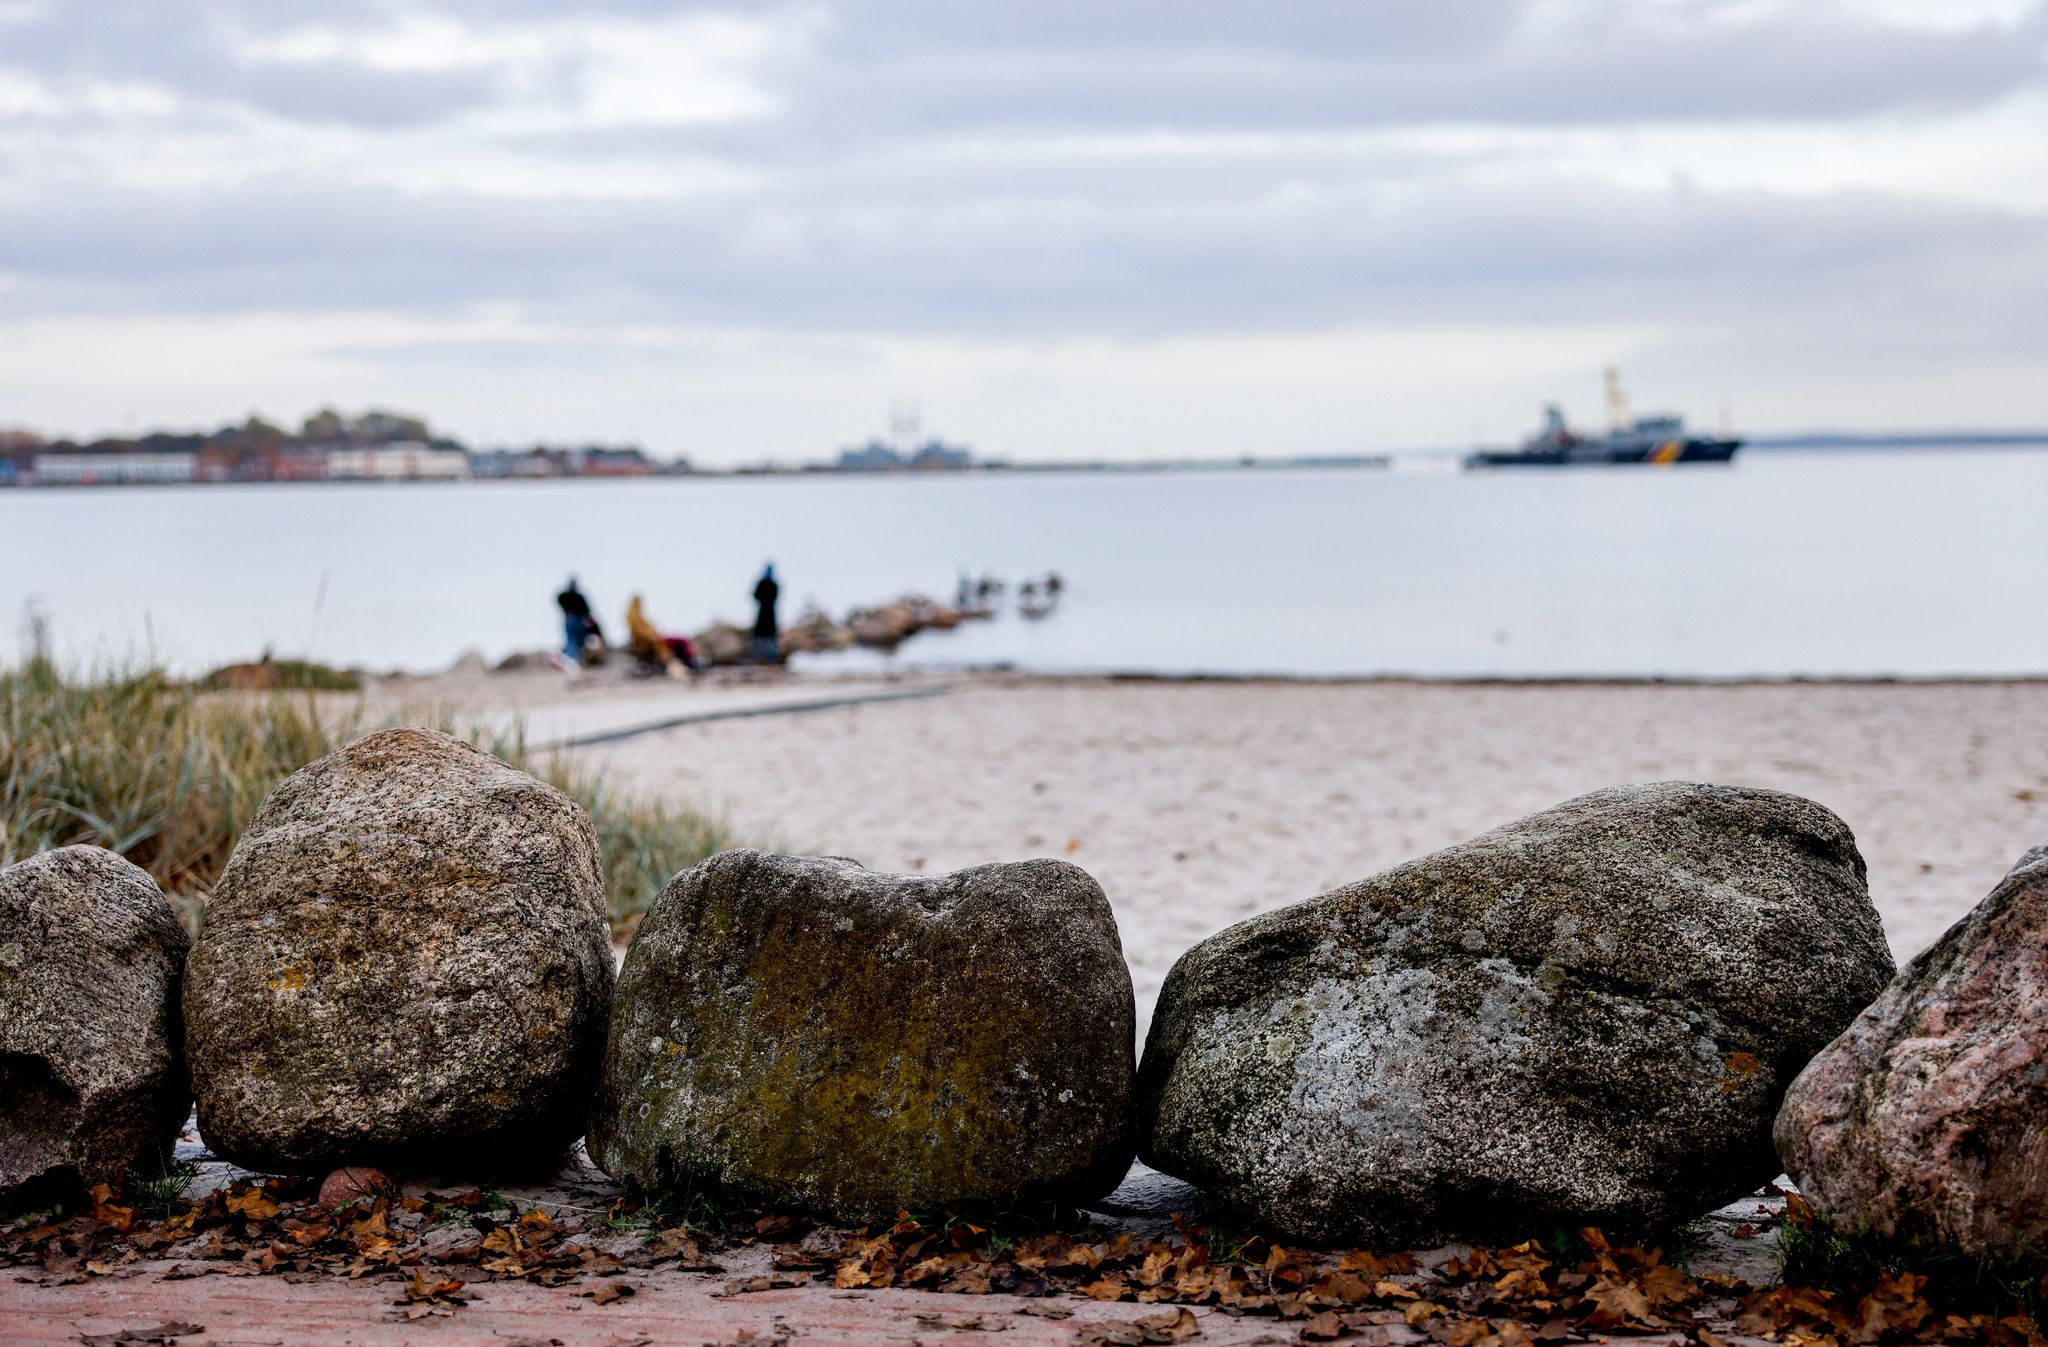 Große Steine liegen als Uferbefestigung in der Eckernförder Bucht am Strand. Die sogenannte Jahrtausendflut, das Hochwasser von 1872, jährt sich zum 150. Mal.